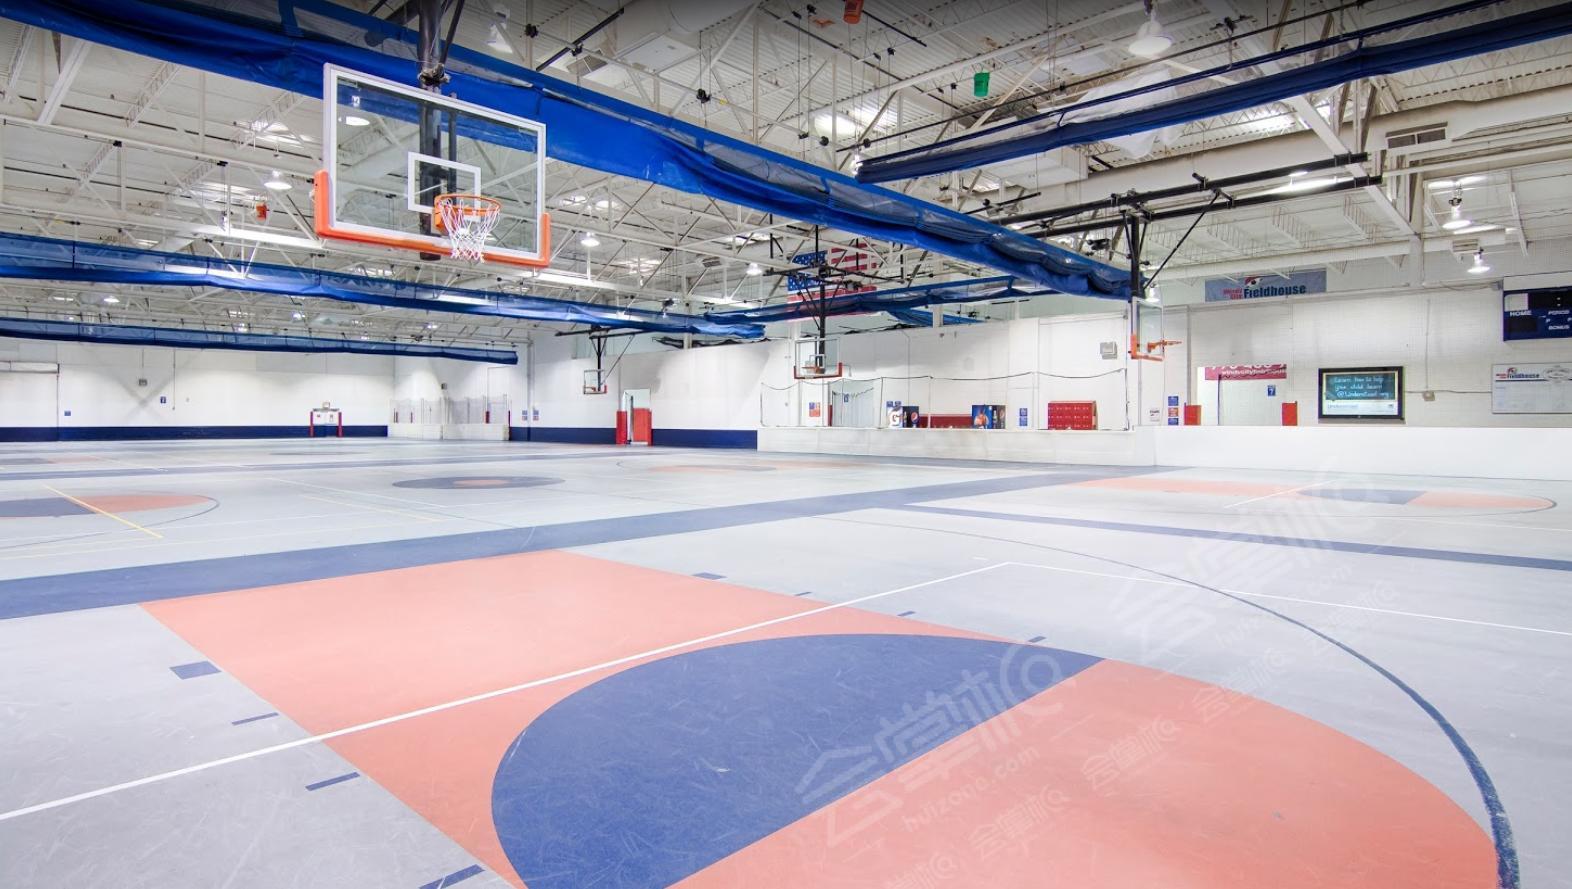 Sports Facility